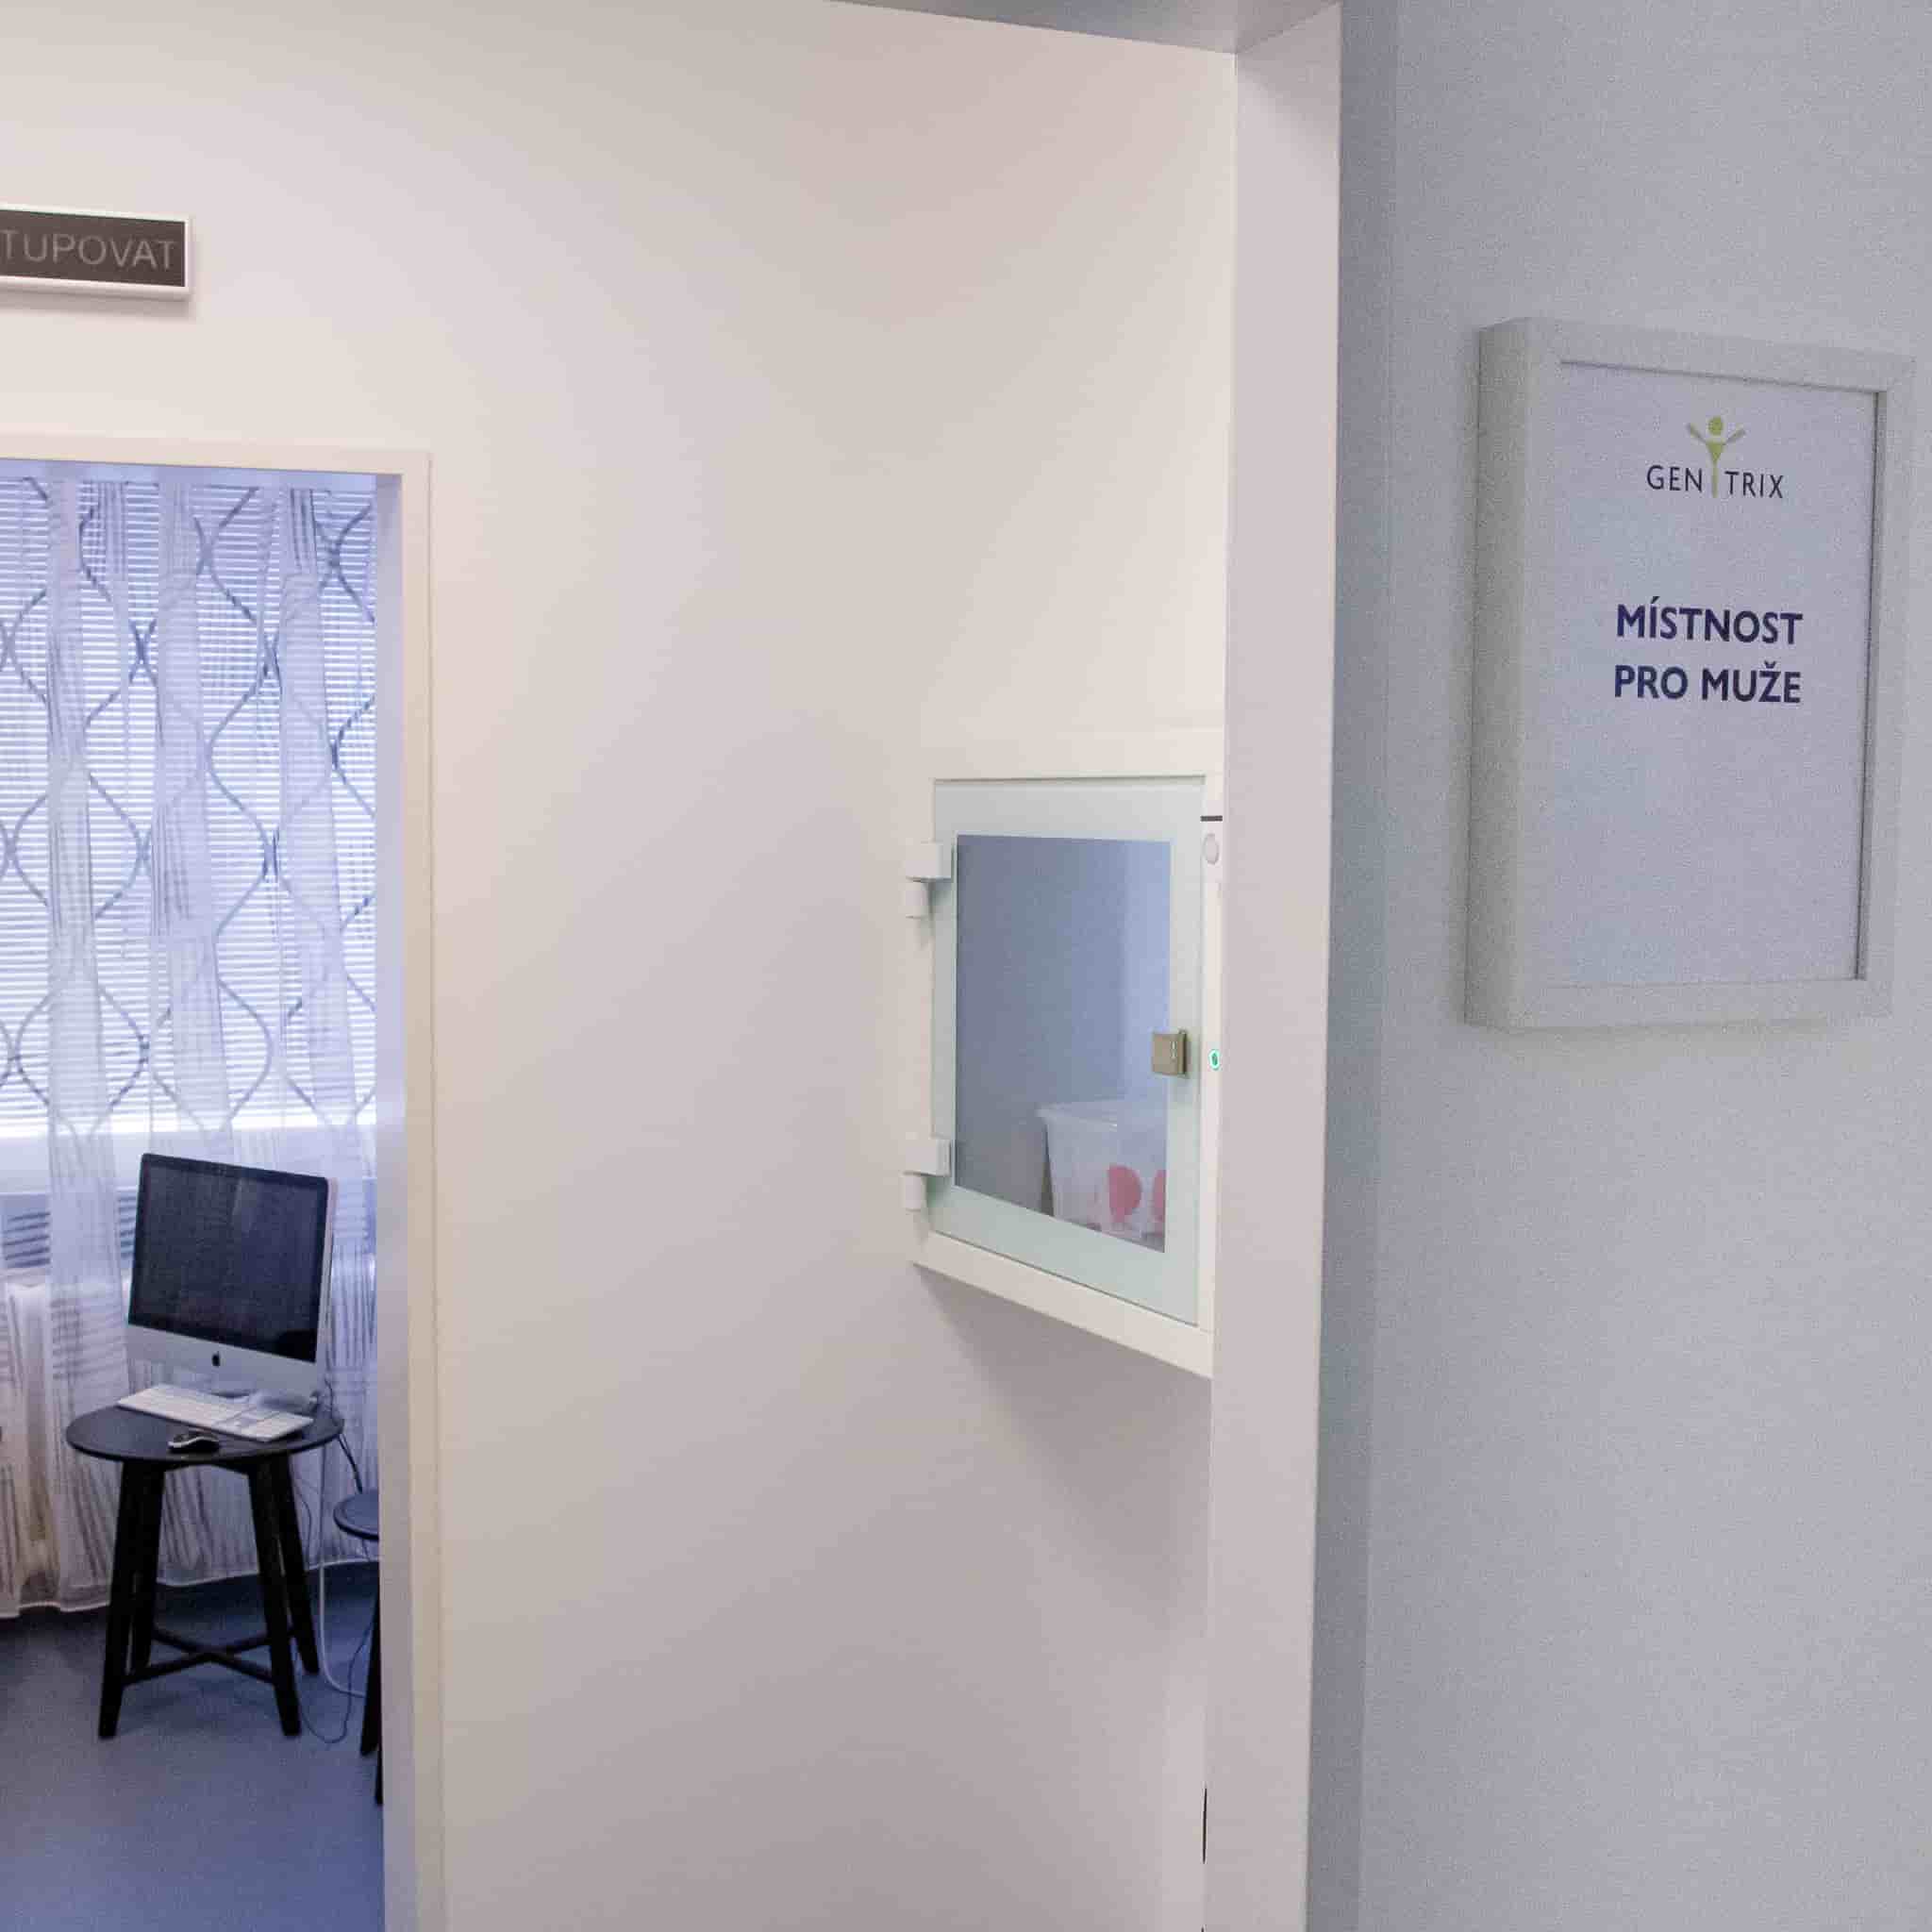 IVF - místnost pro muže